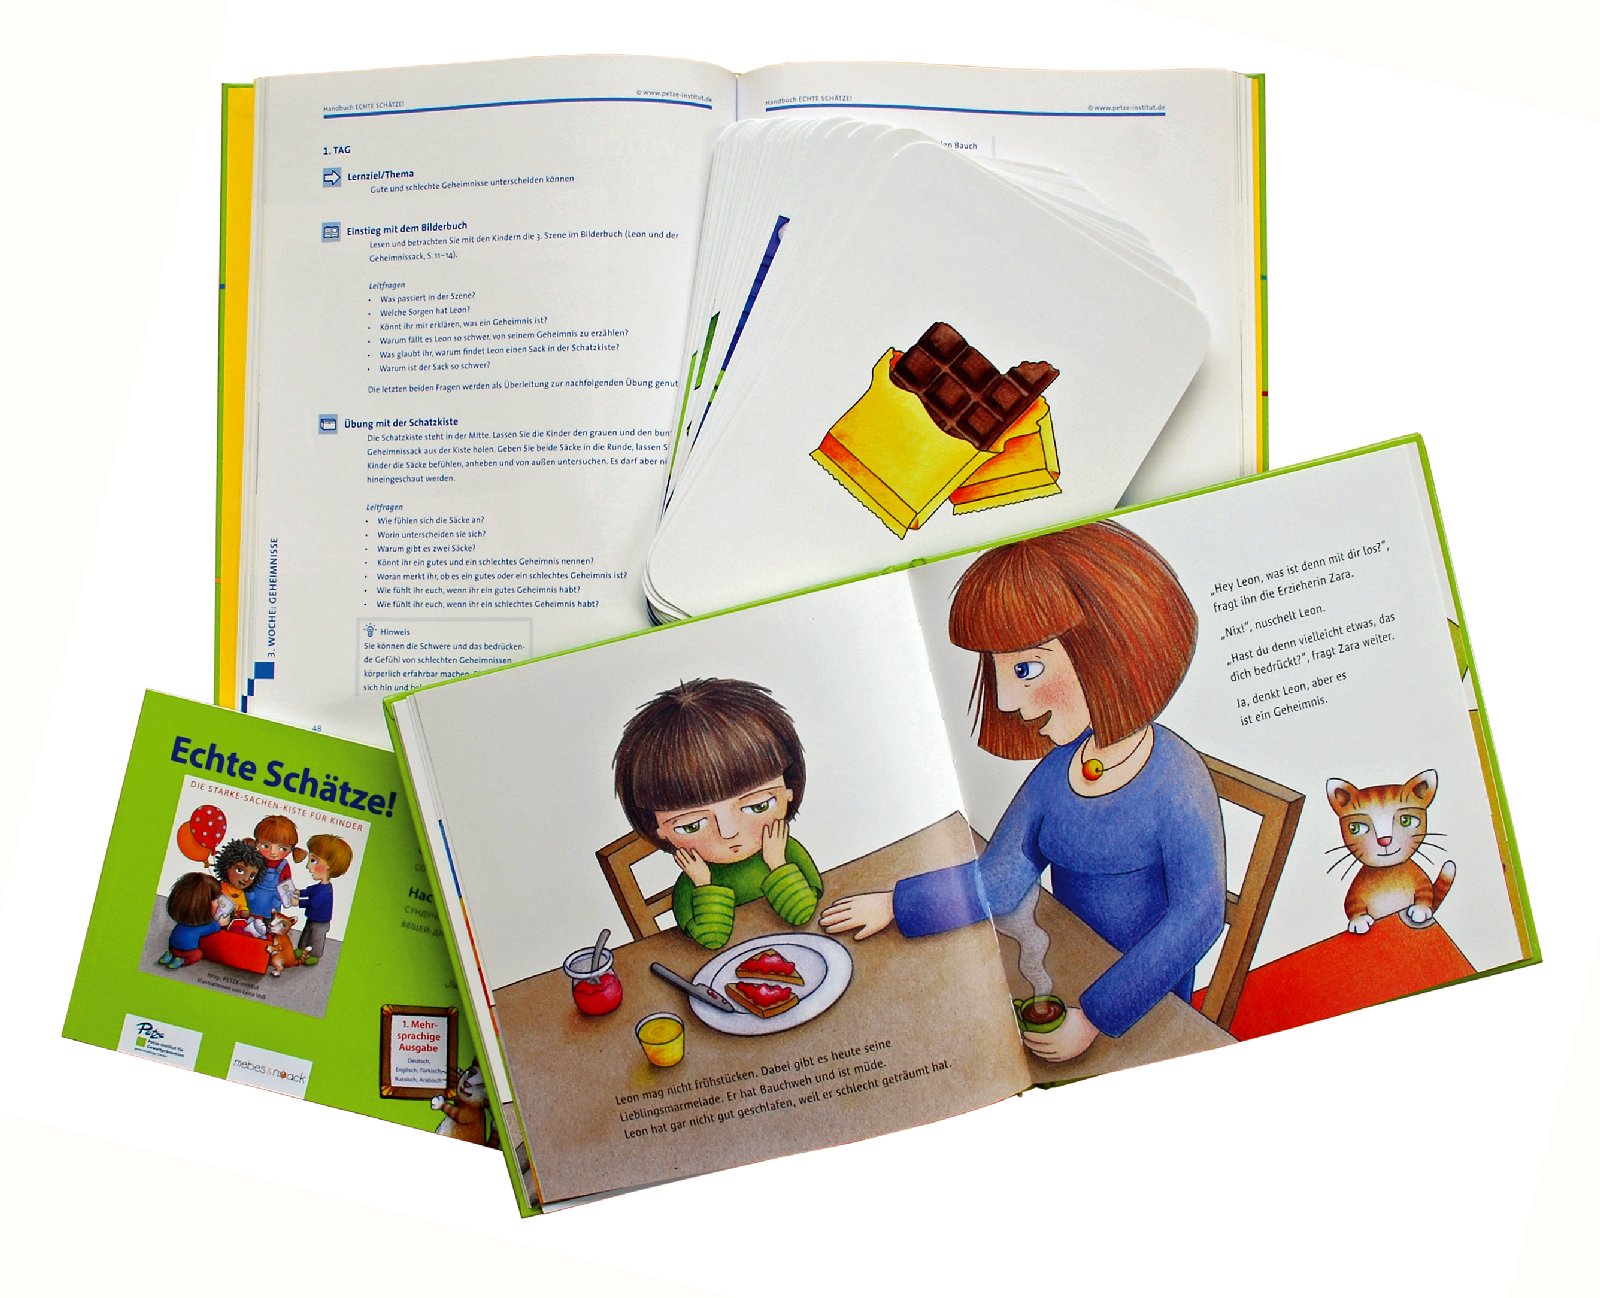 ECHTE SCHÄTZE! für Kinder: Handbuch, Bilderbuch und Mini-Bilderbuch